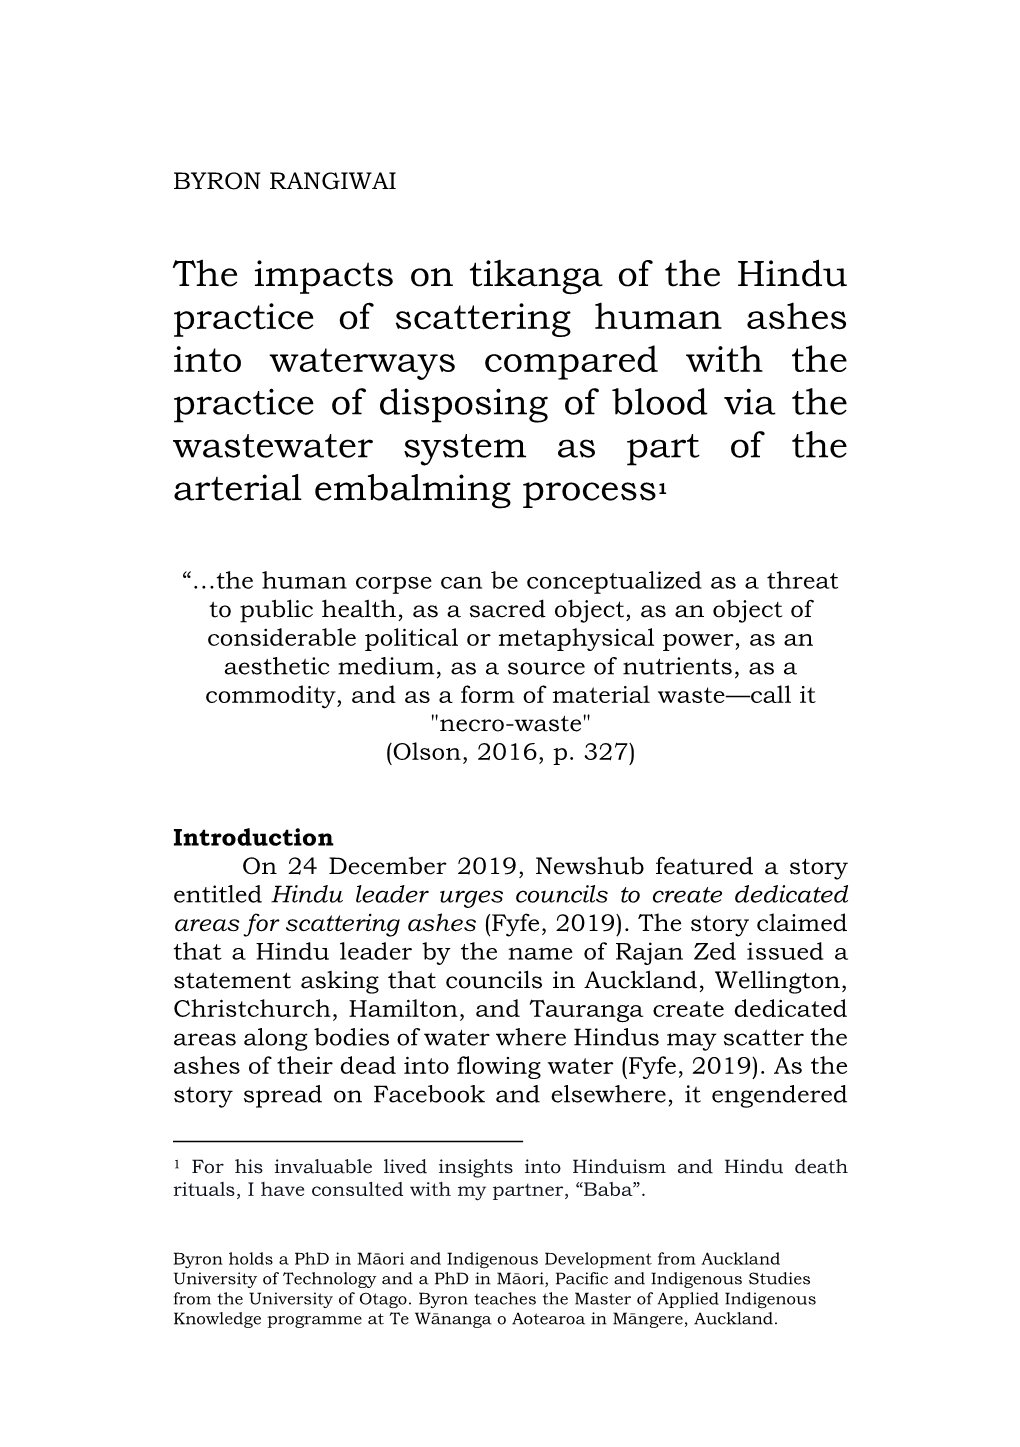 The Impacts on Tikanga of the Hindu